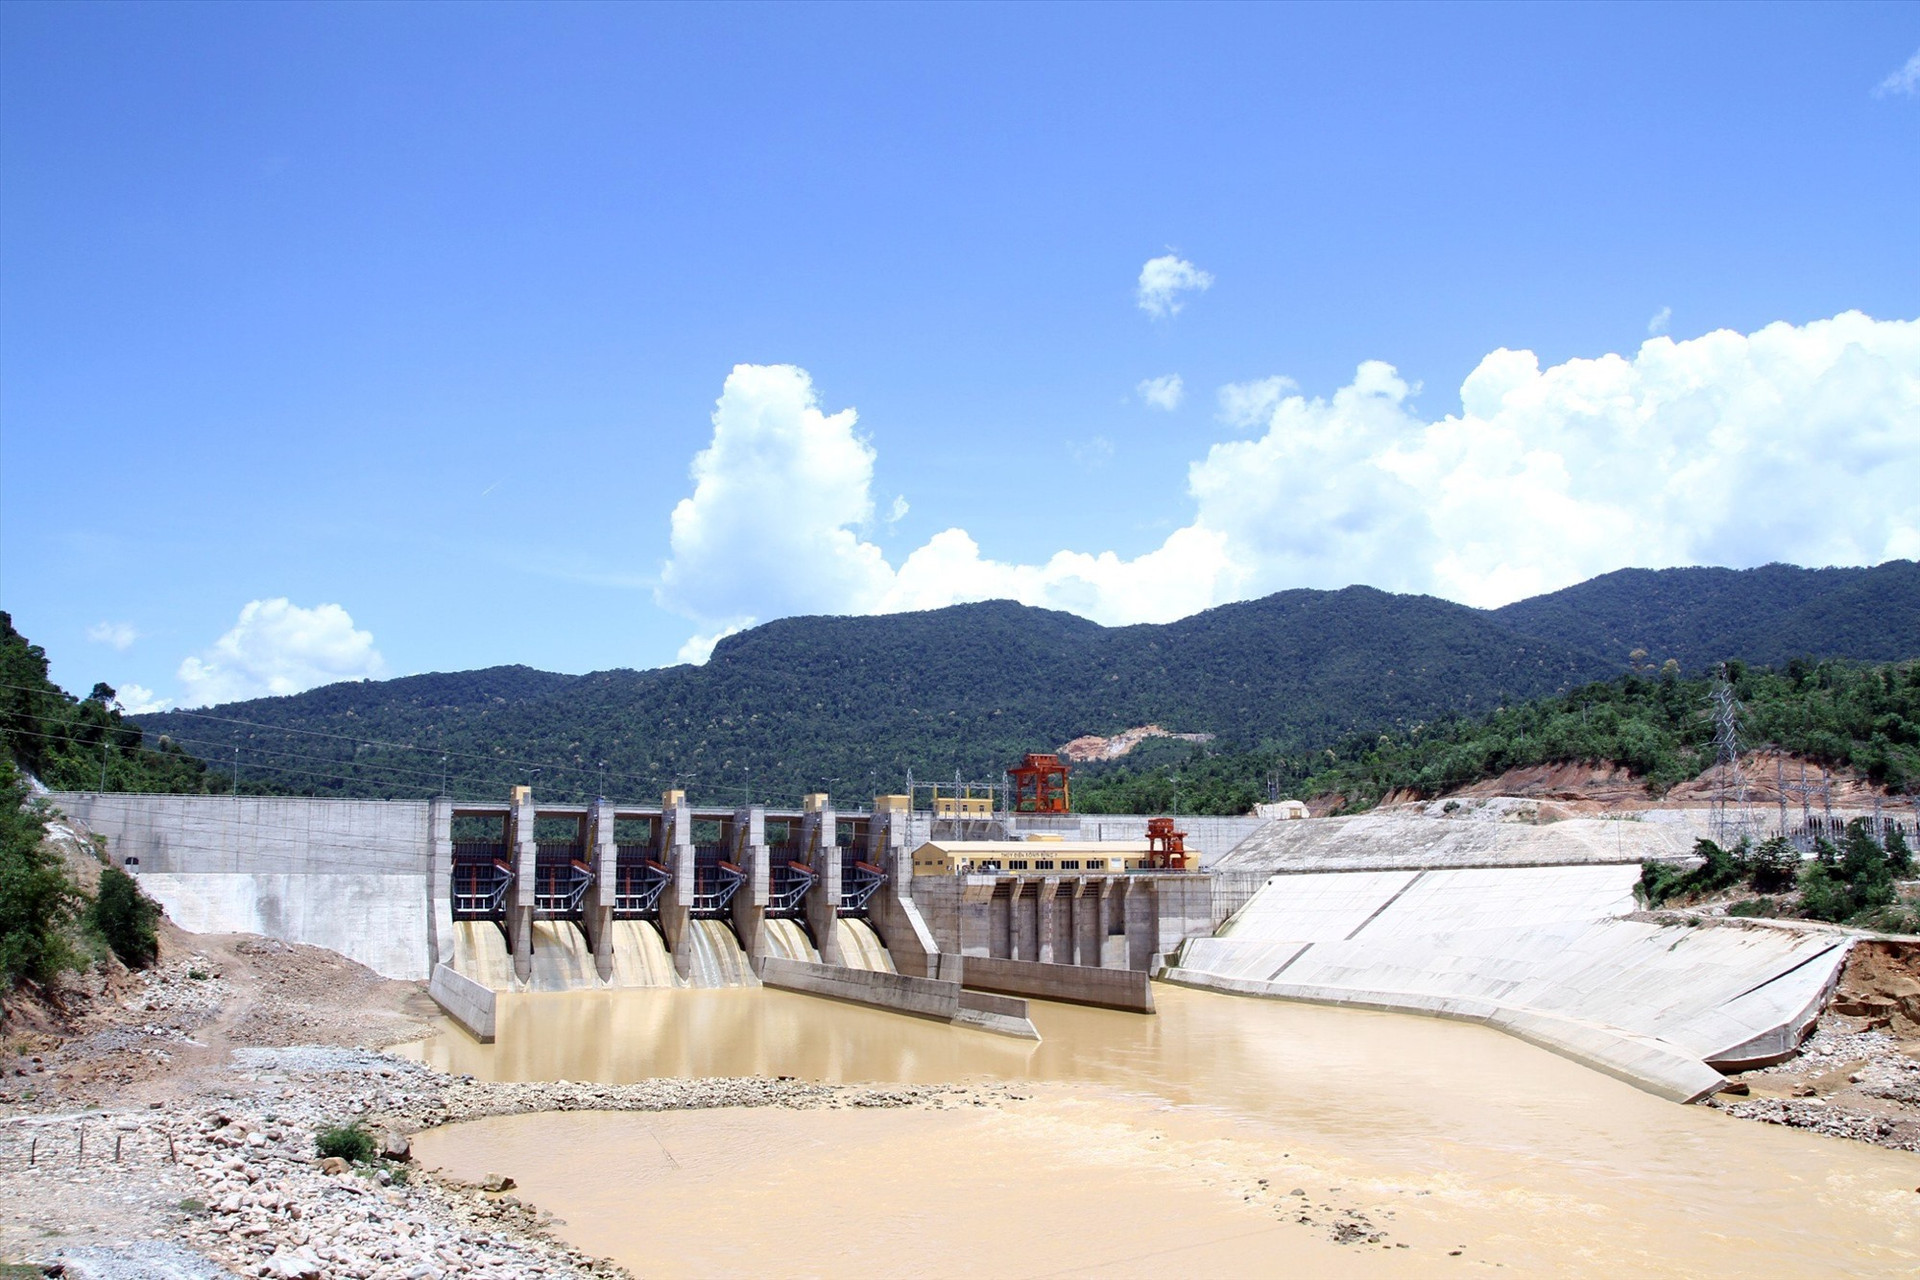 Nhờ có ban điều phối, việc điều tiết, vận hành các hệ thống thủy điện ở thượng nguồn lưu vực sông Vu Gia - Thu Bồn đã hiệu quả hơn nhiều so với trước đây. Ảnh: C.T